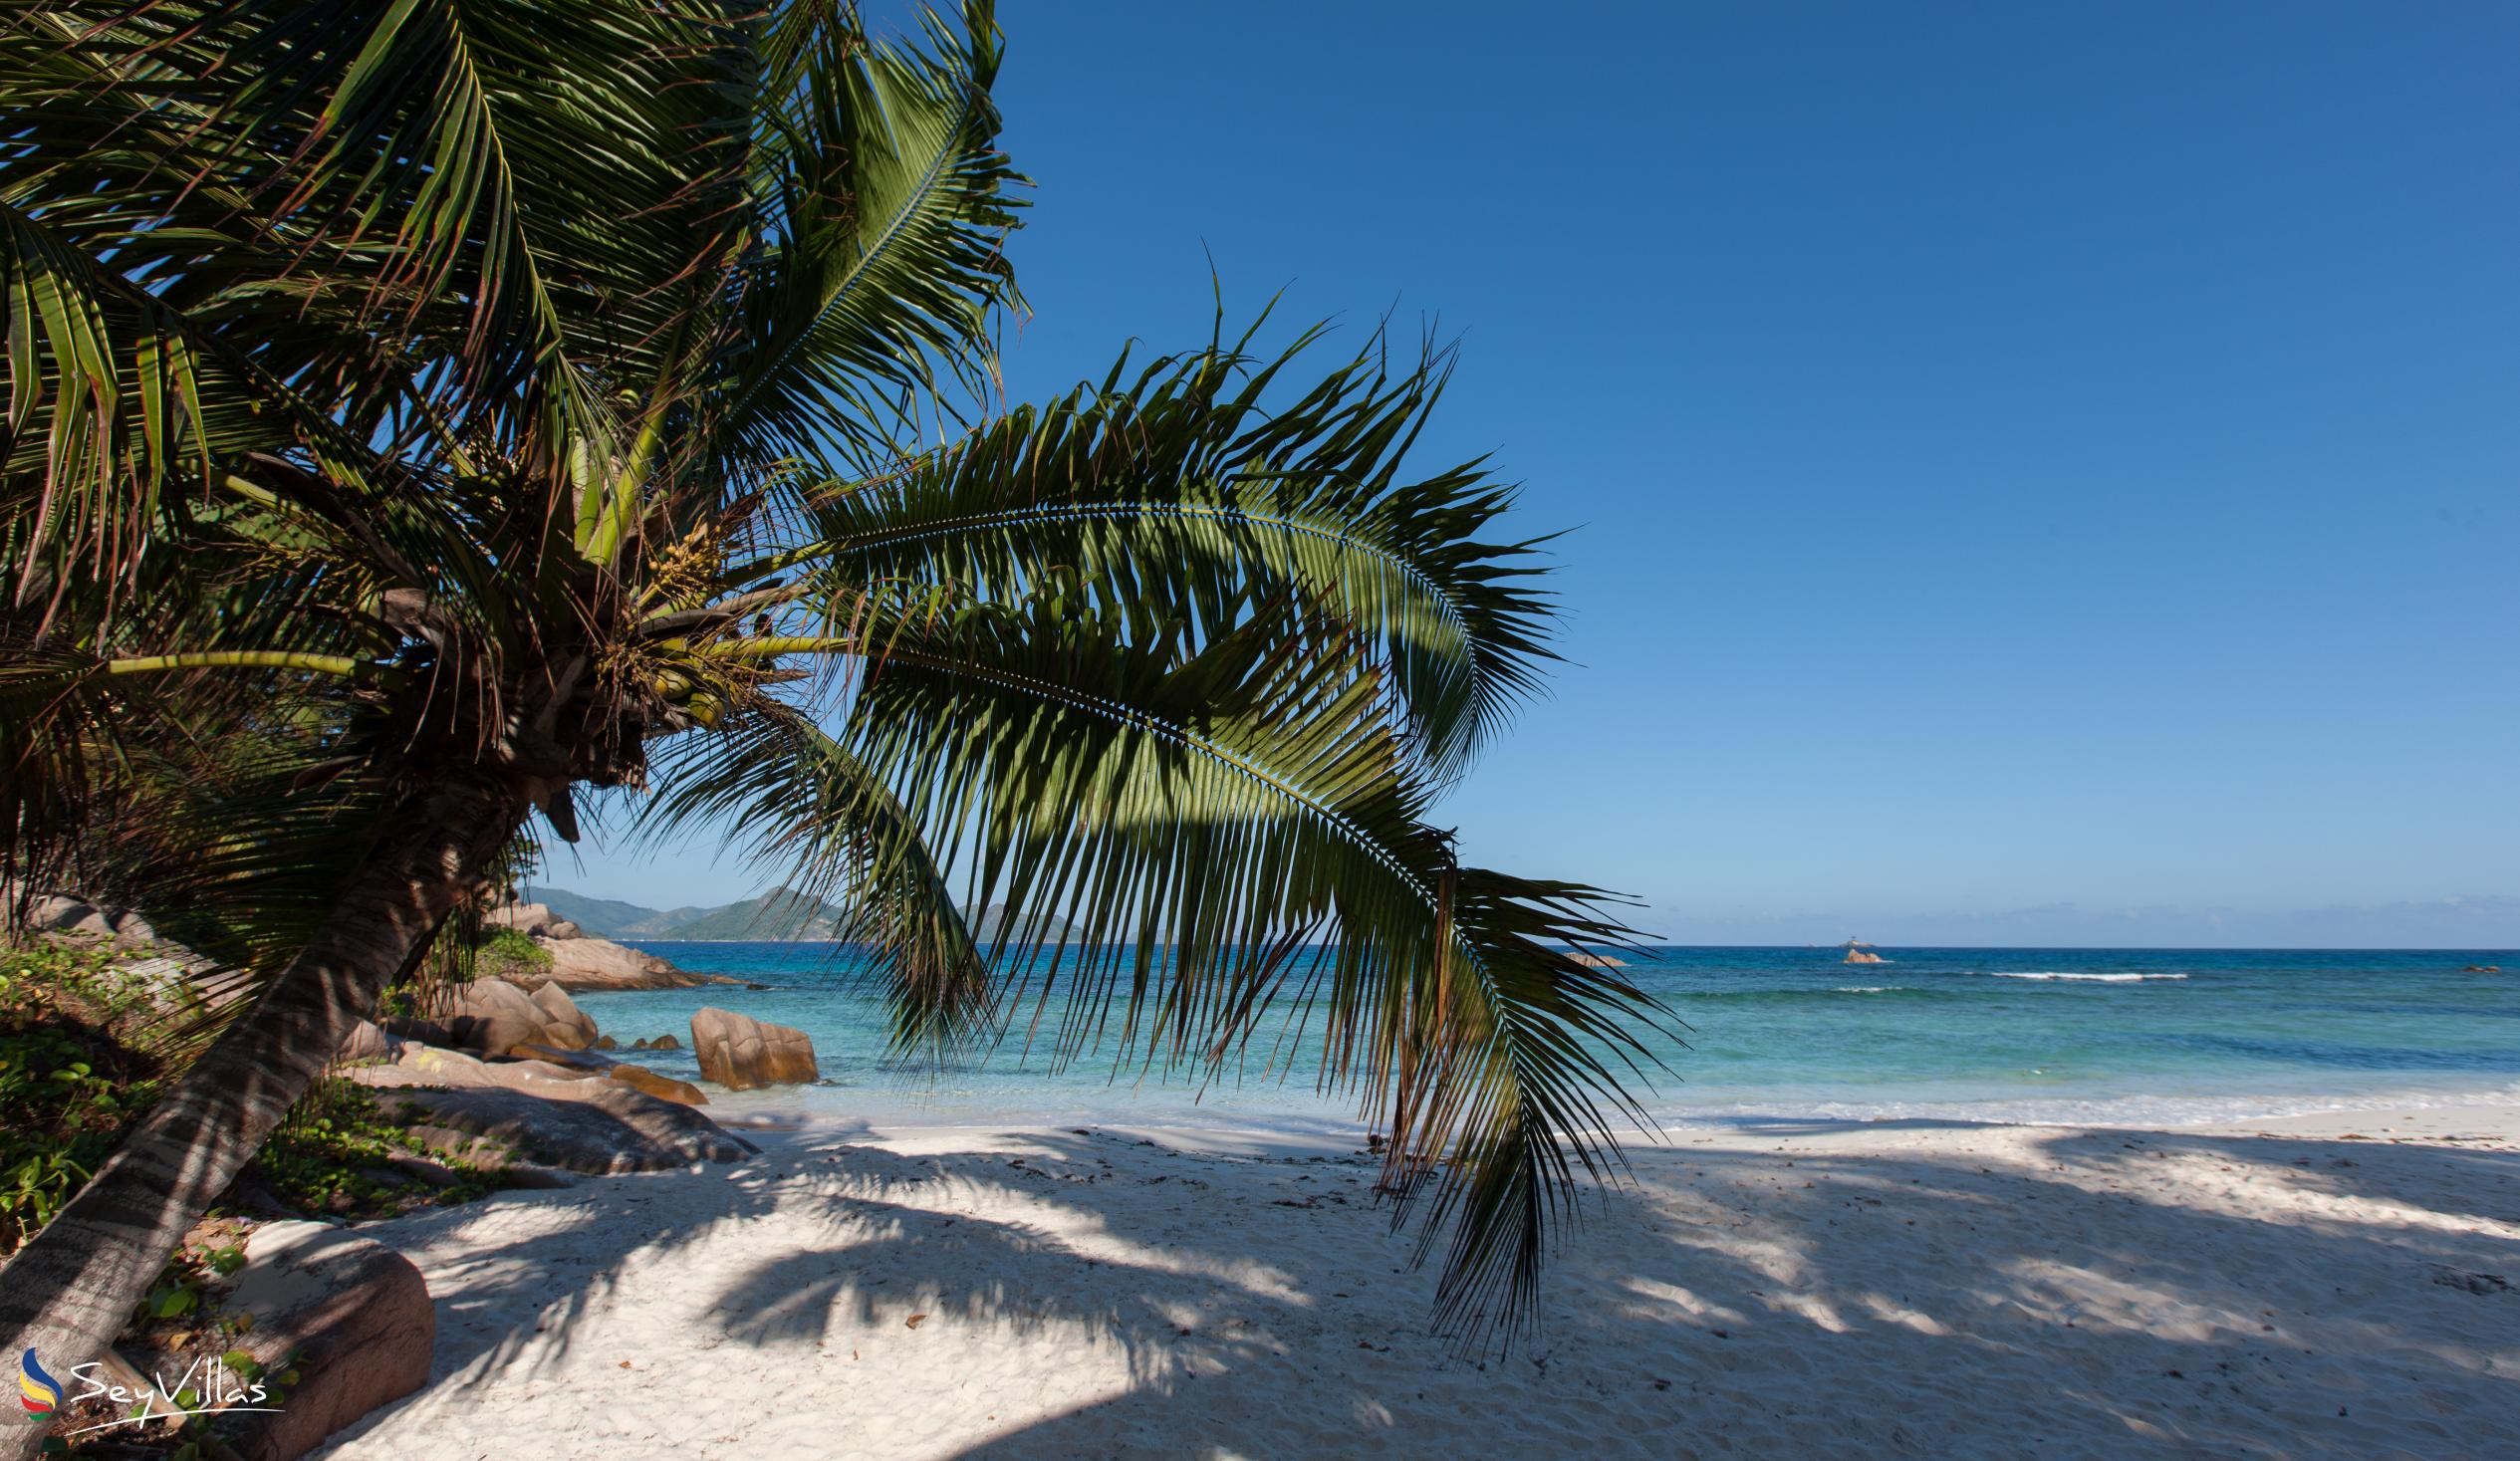 Photo 41: O'Soleil Chalets - Beaches - La Digue (Seychelles)